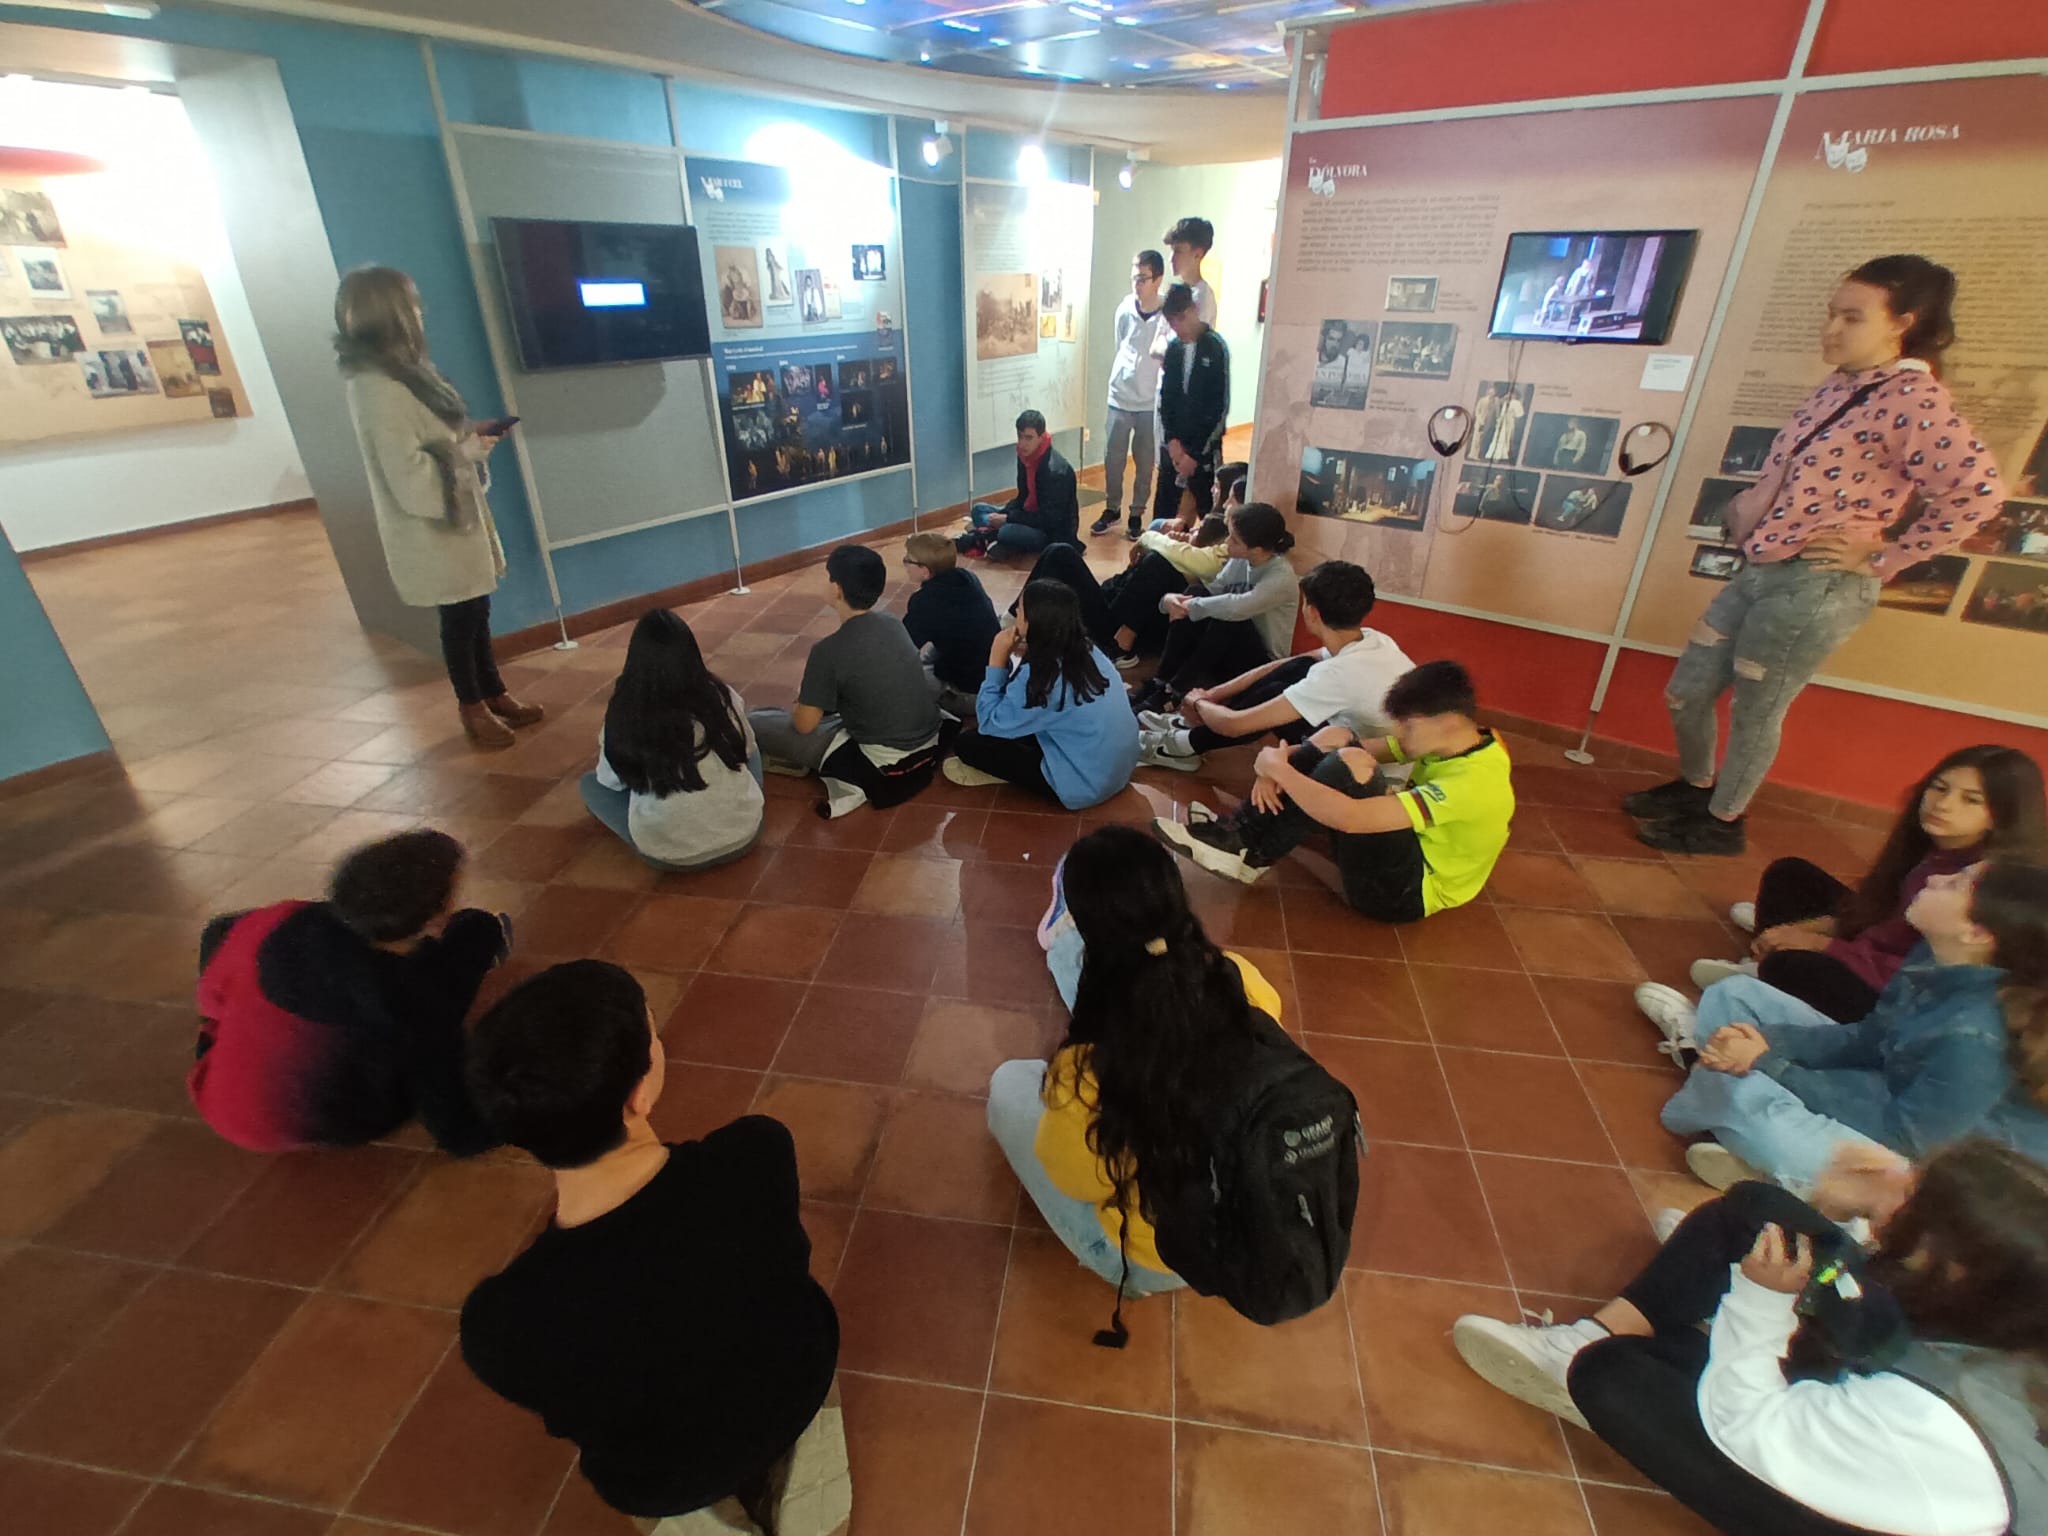 Carrussel d'imatges dels alumnes durant la visita a la Casa Museu d'Àngel Guimerà